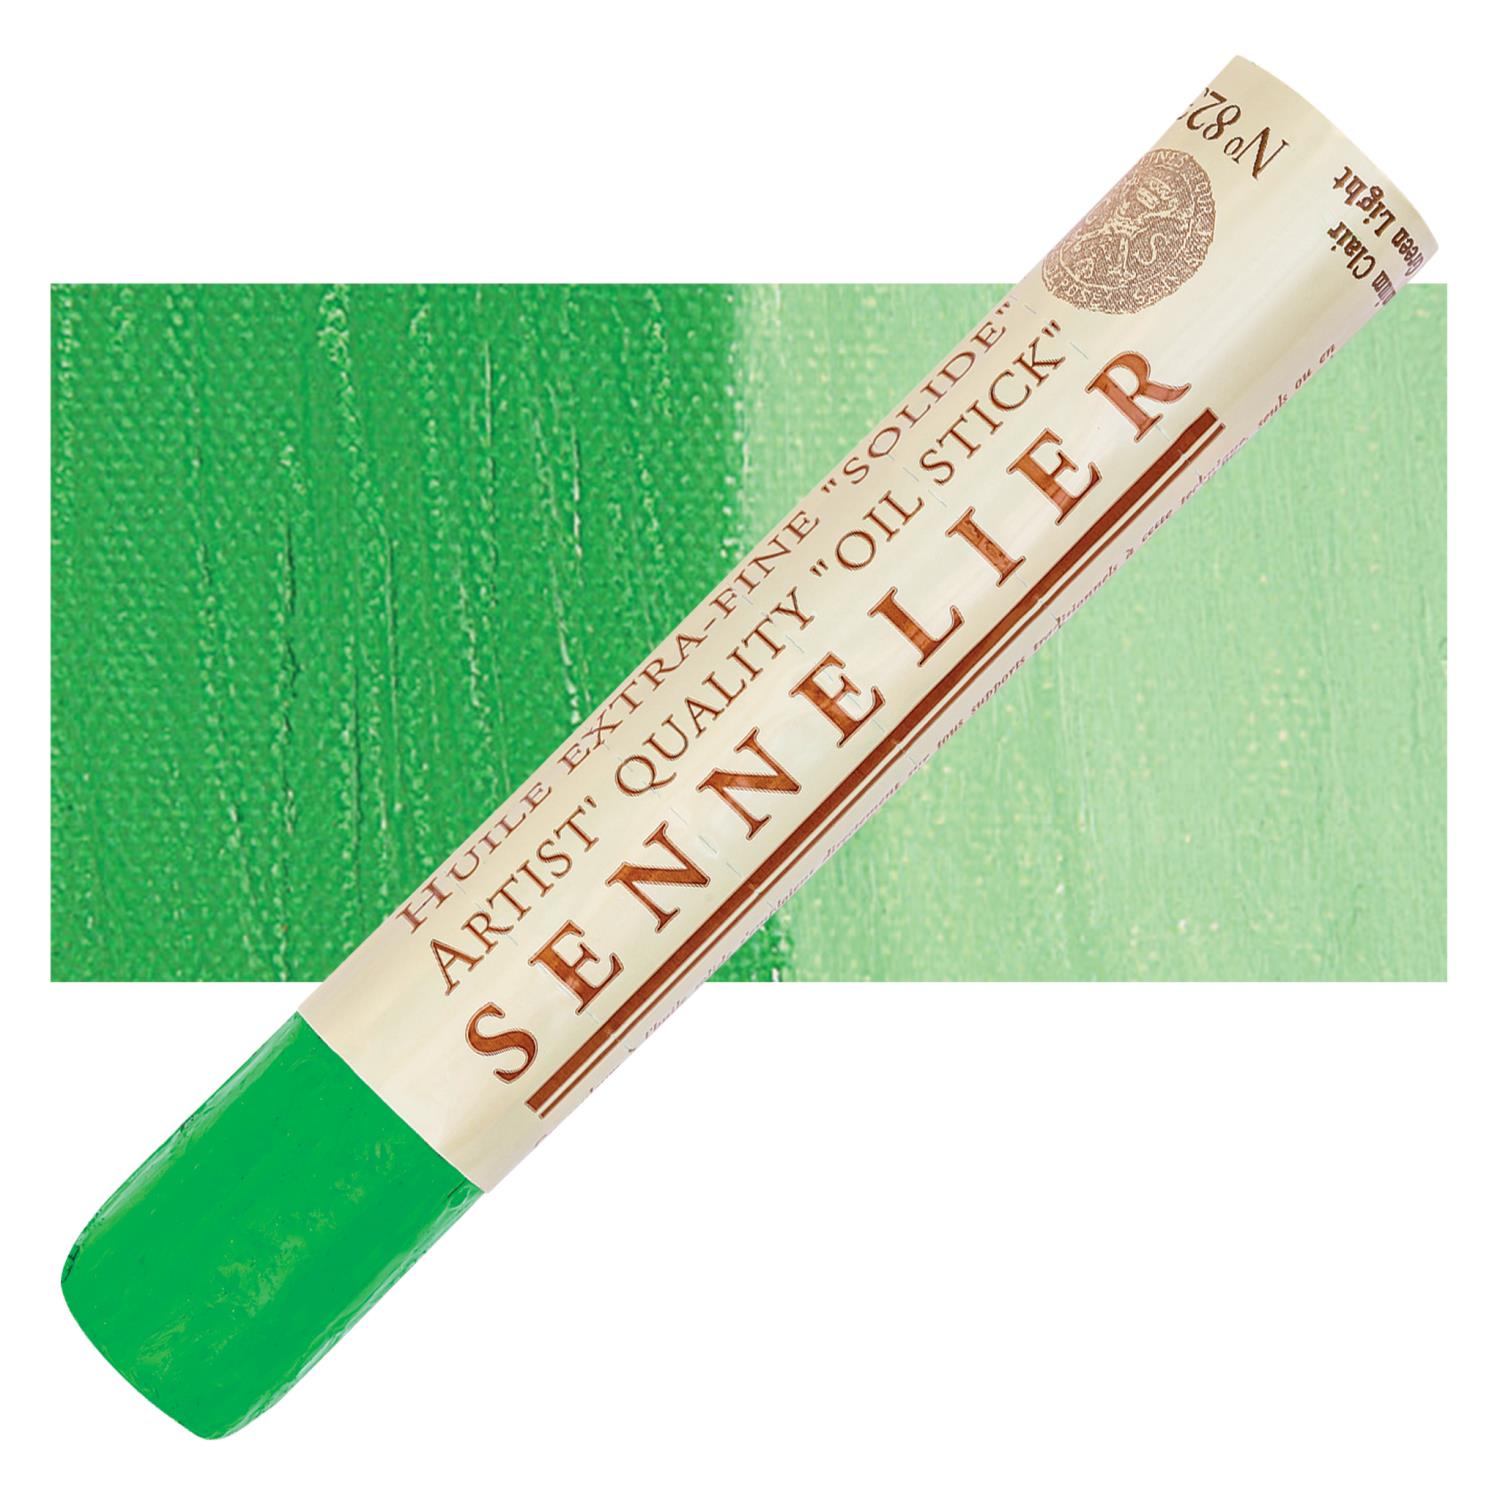 Sennelier Artist Oil Stick 38ml - 823 Cadmium Green Light S3 utgår